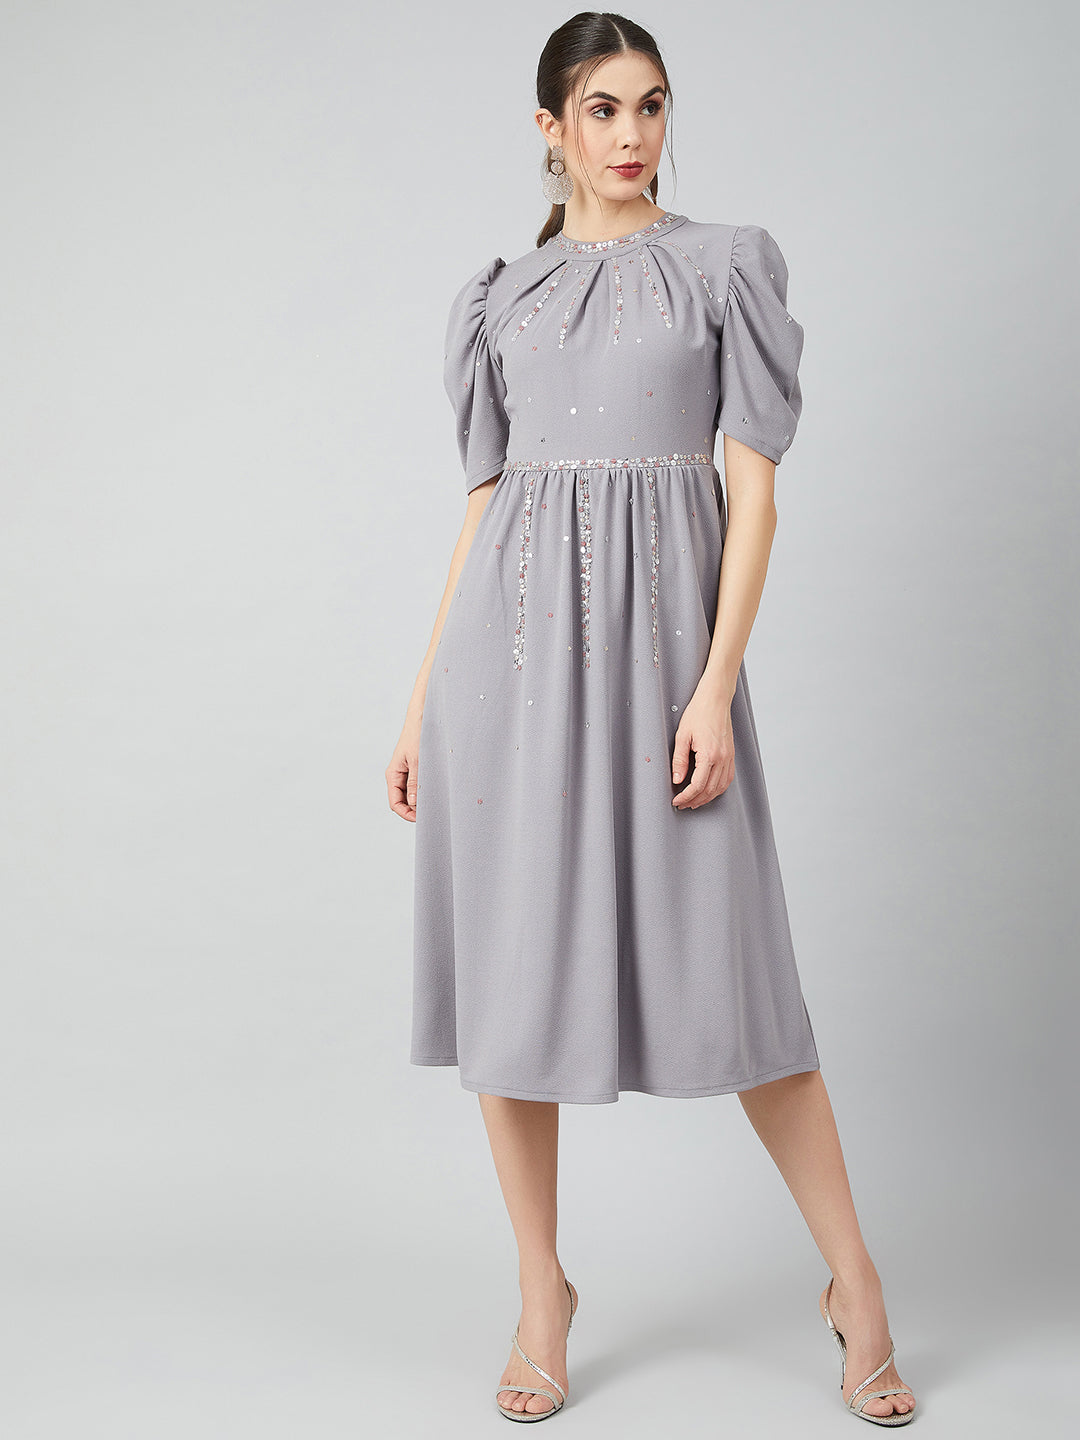 Athena Grey Embellished Fit and Flare Dress - Athena Lifestyle